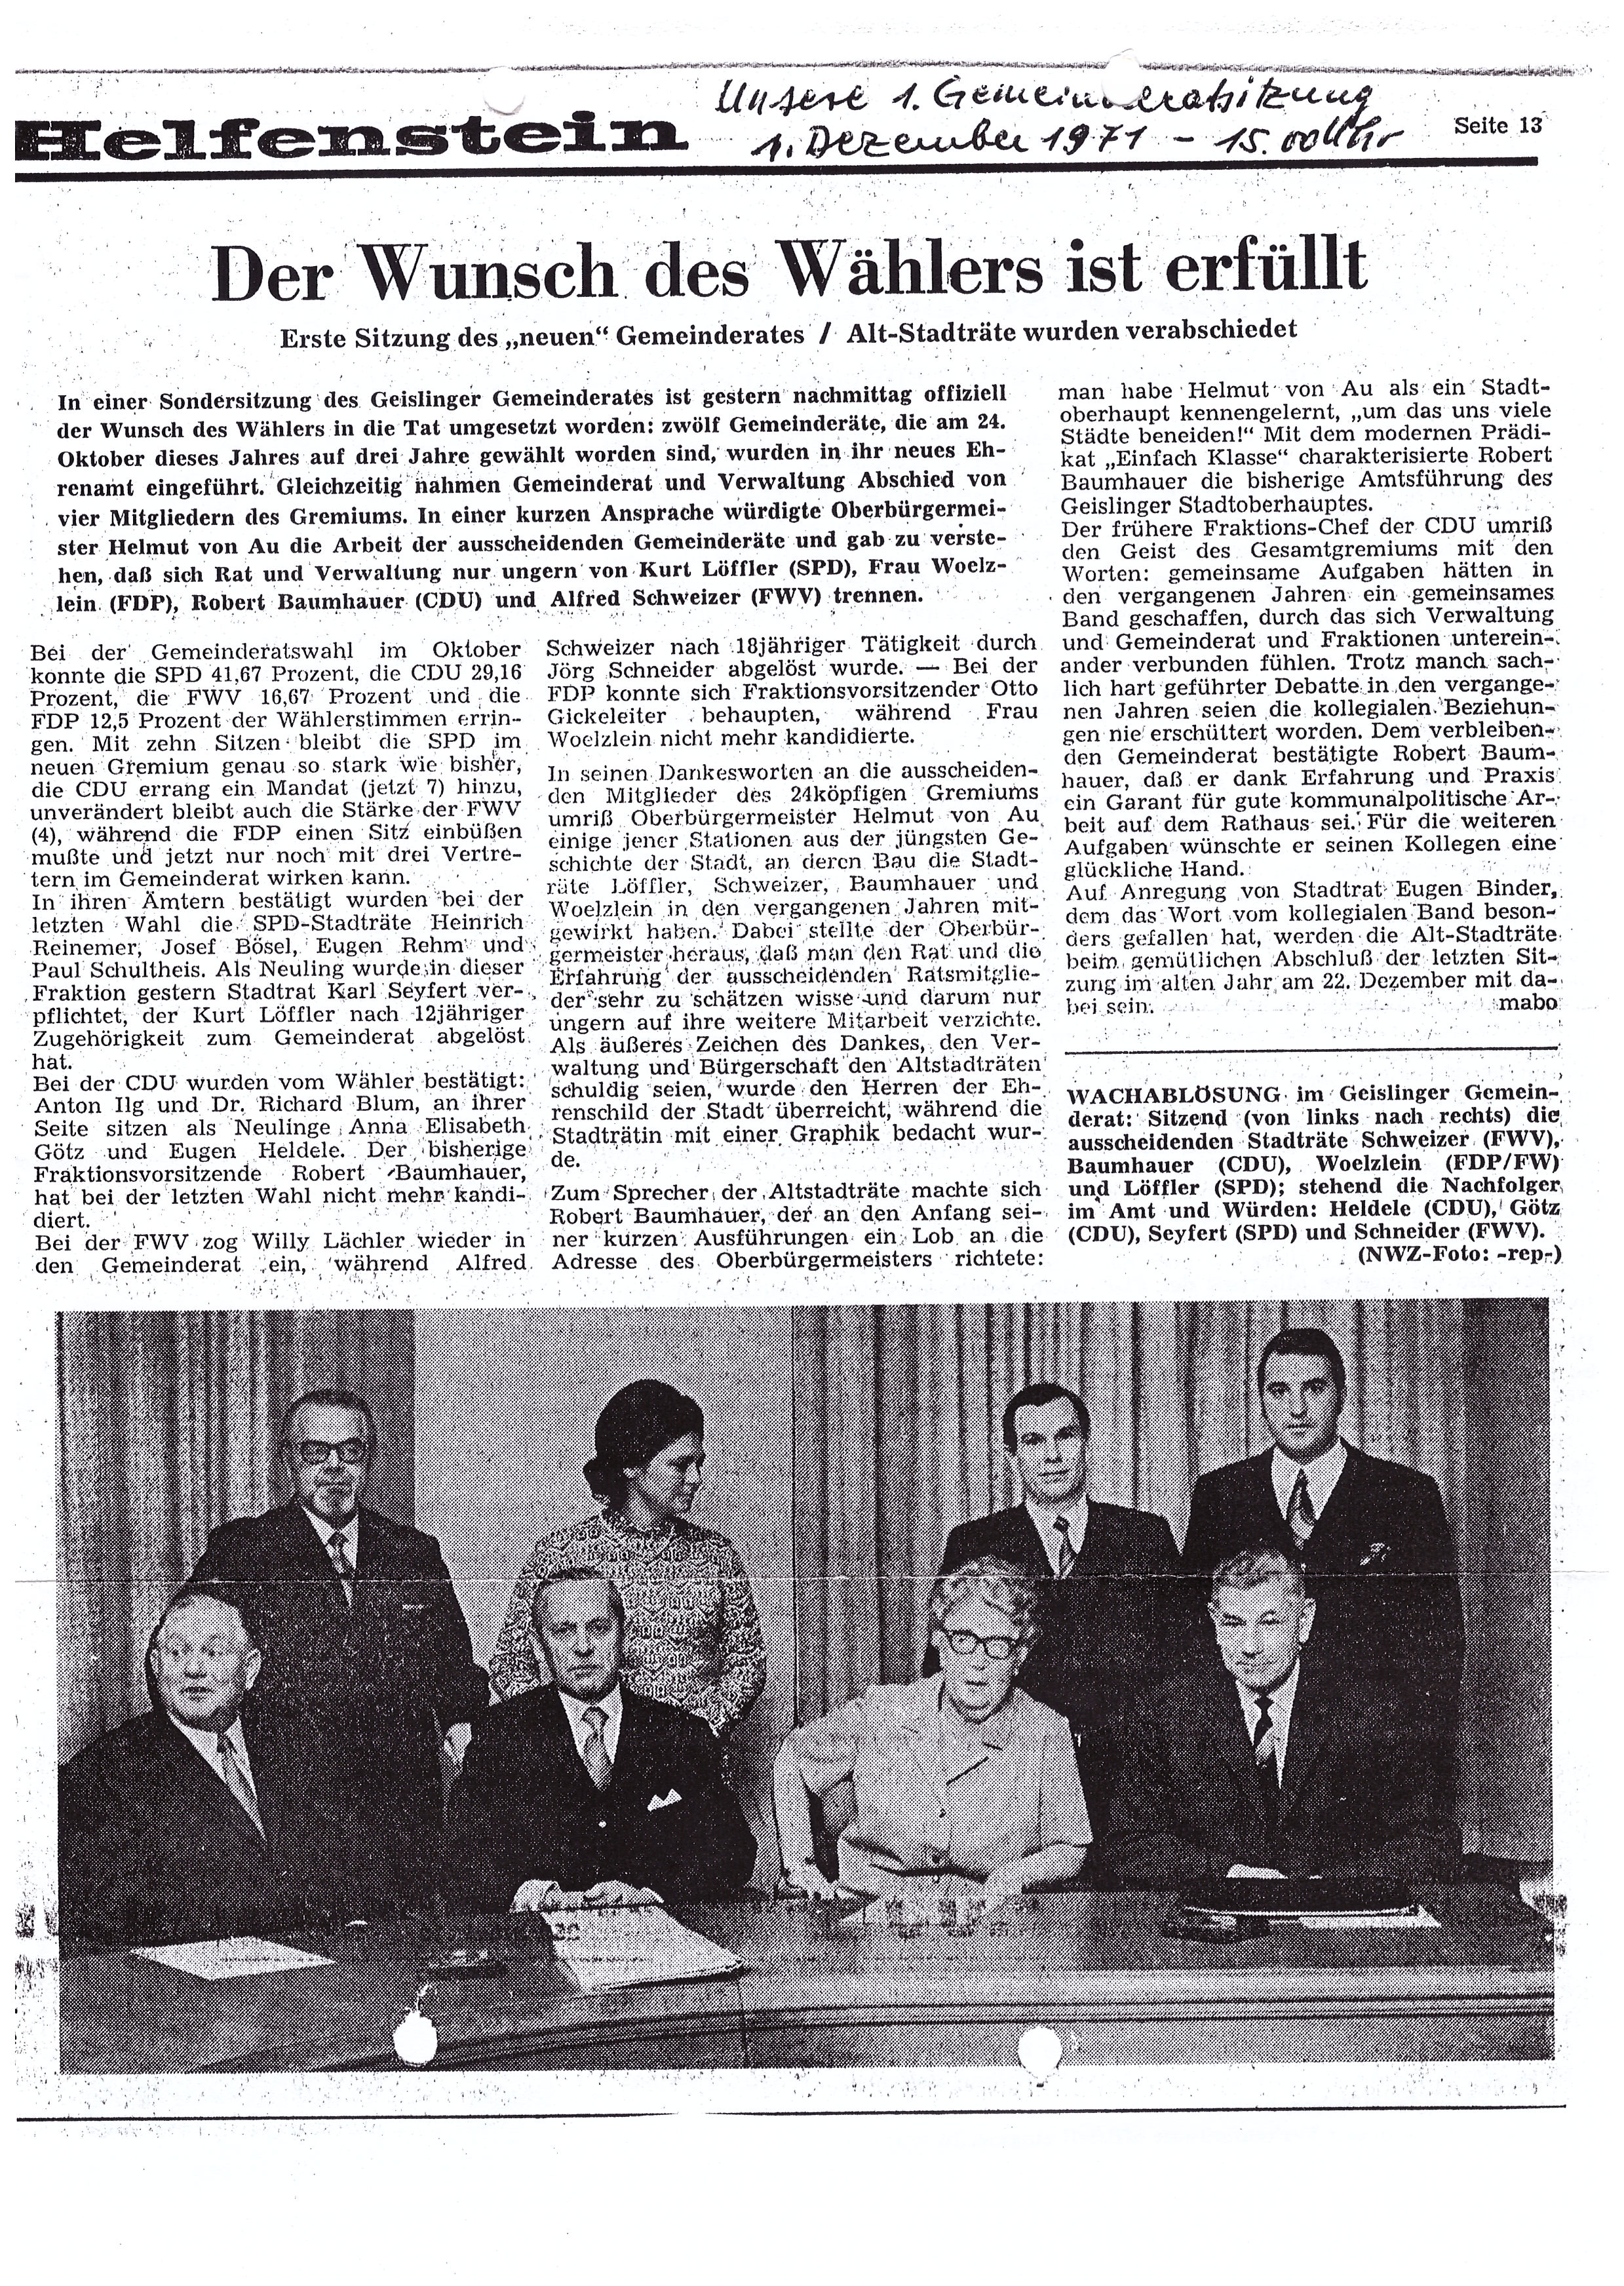 Bericht über die 1. Gemeinderatssitzung von Jörg Schneider im Geislinger Fünftälerbote vom Dezember 1971